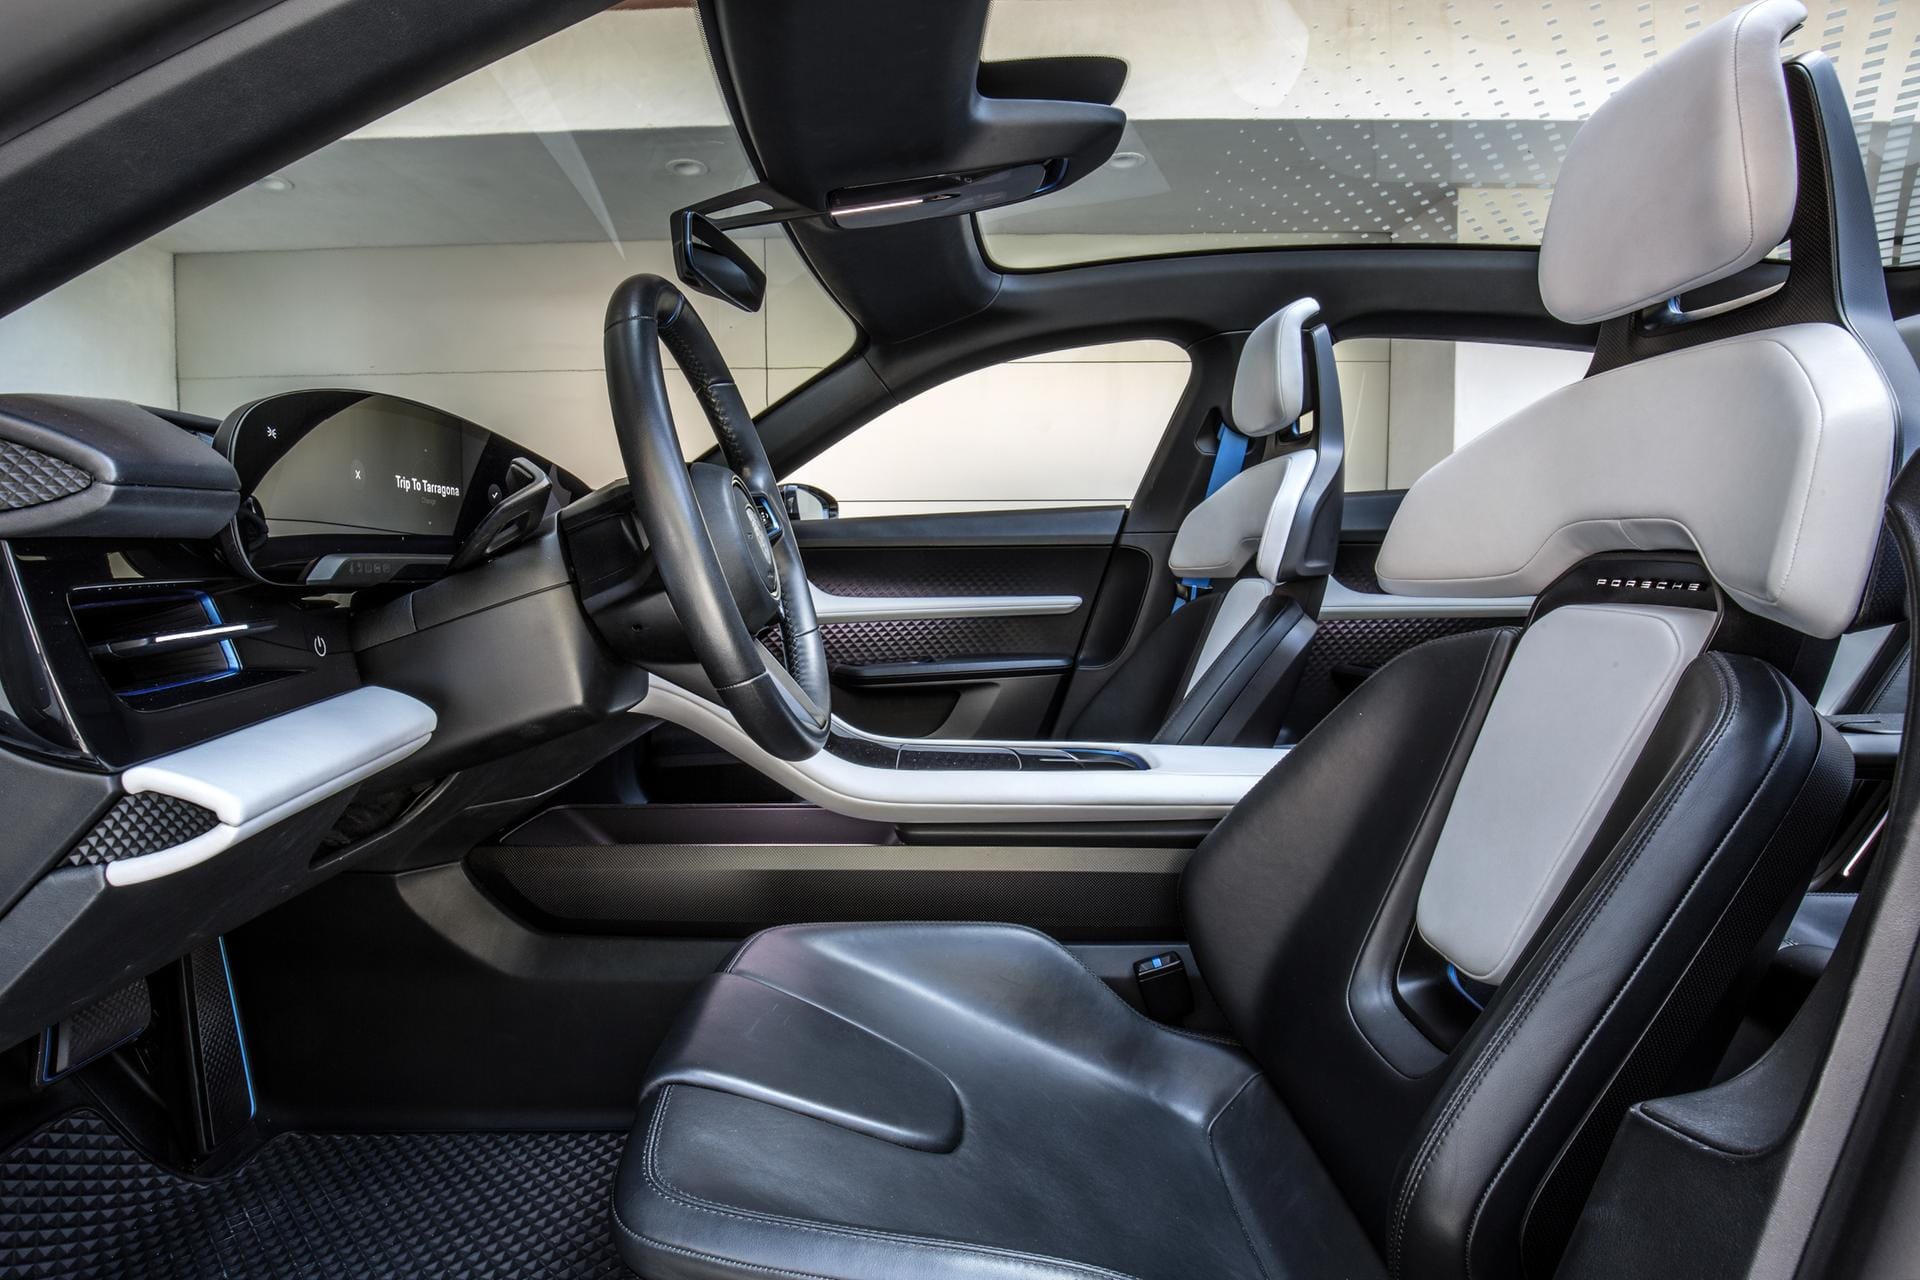 Willkommen in der Zukunft: Wie es sich für eine Auto-Studie gehört, bietet der Mission E futuristisch wirkende Sitze und ein großes Glasdach.